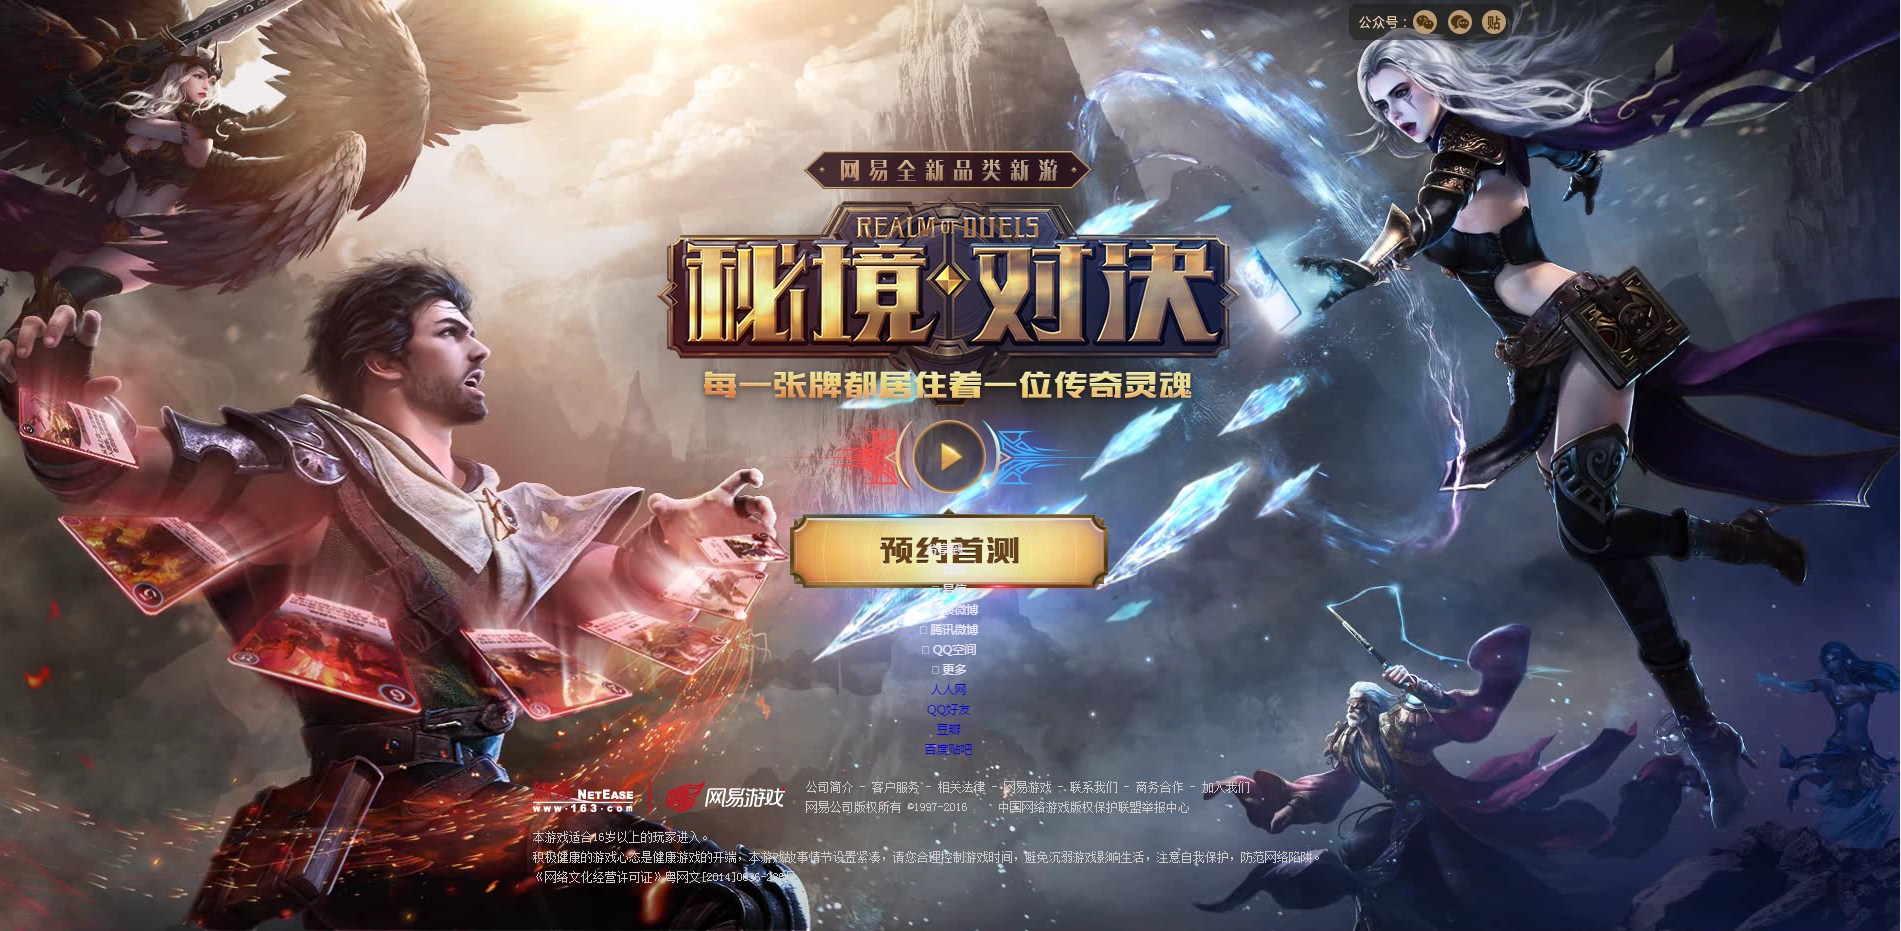 NetEase trình làng game mới